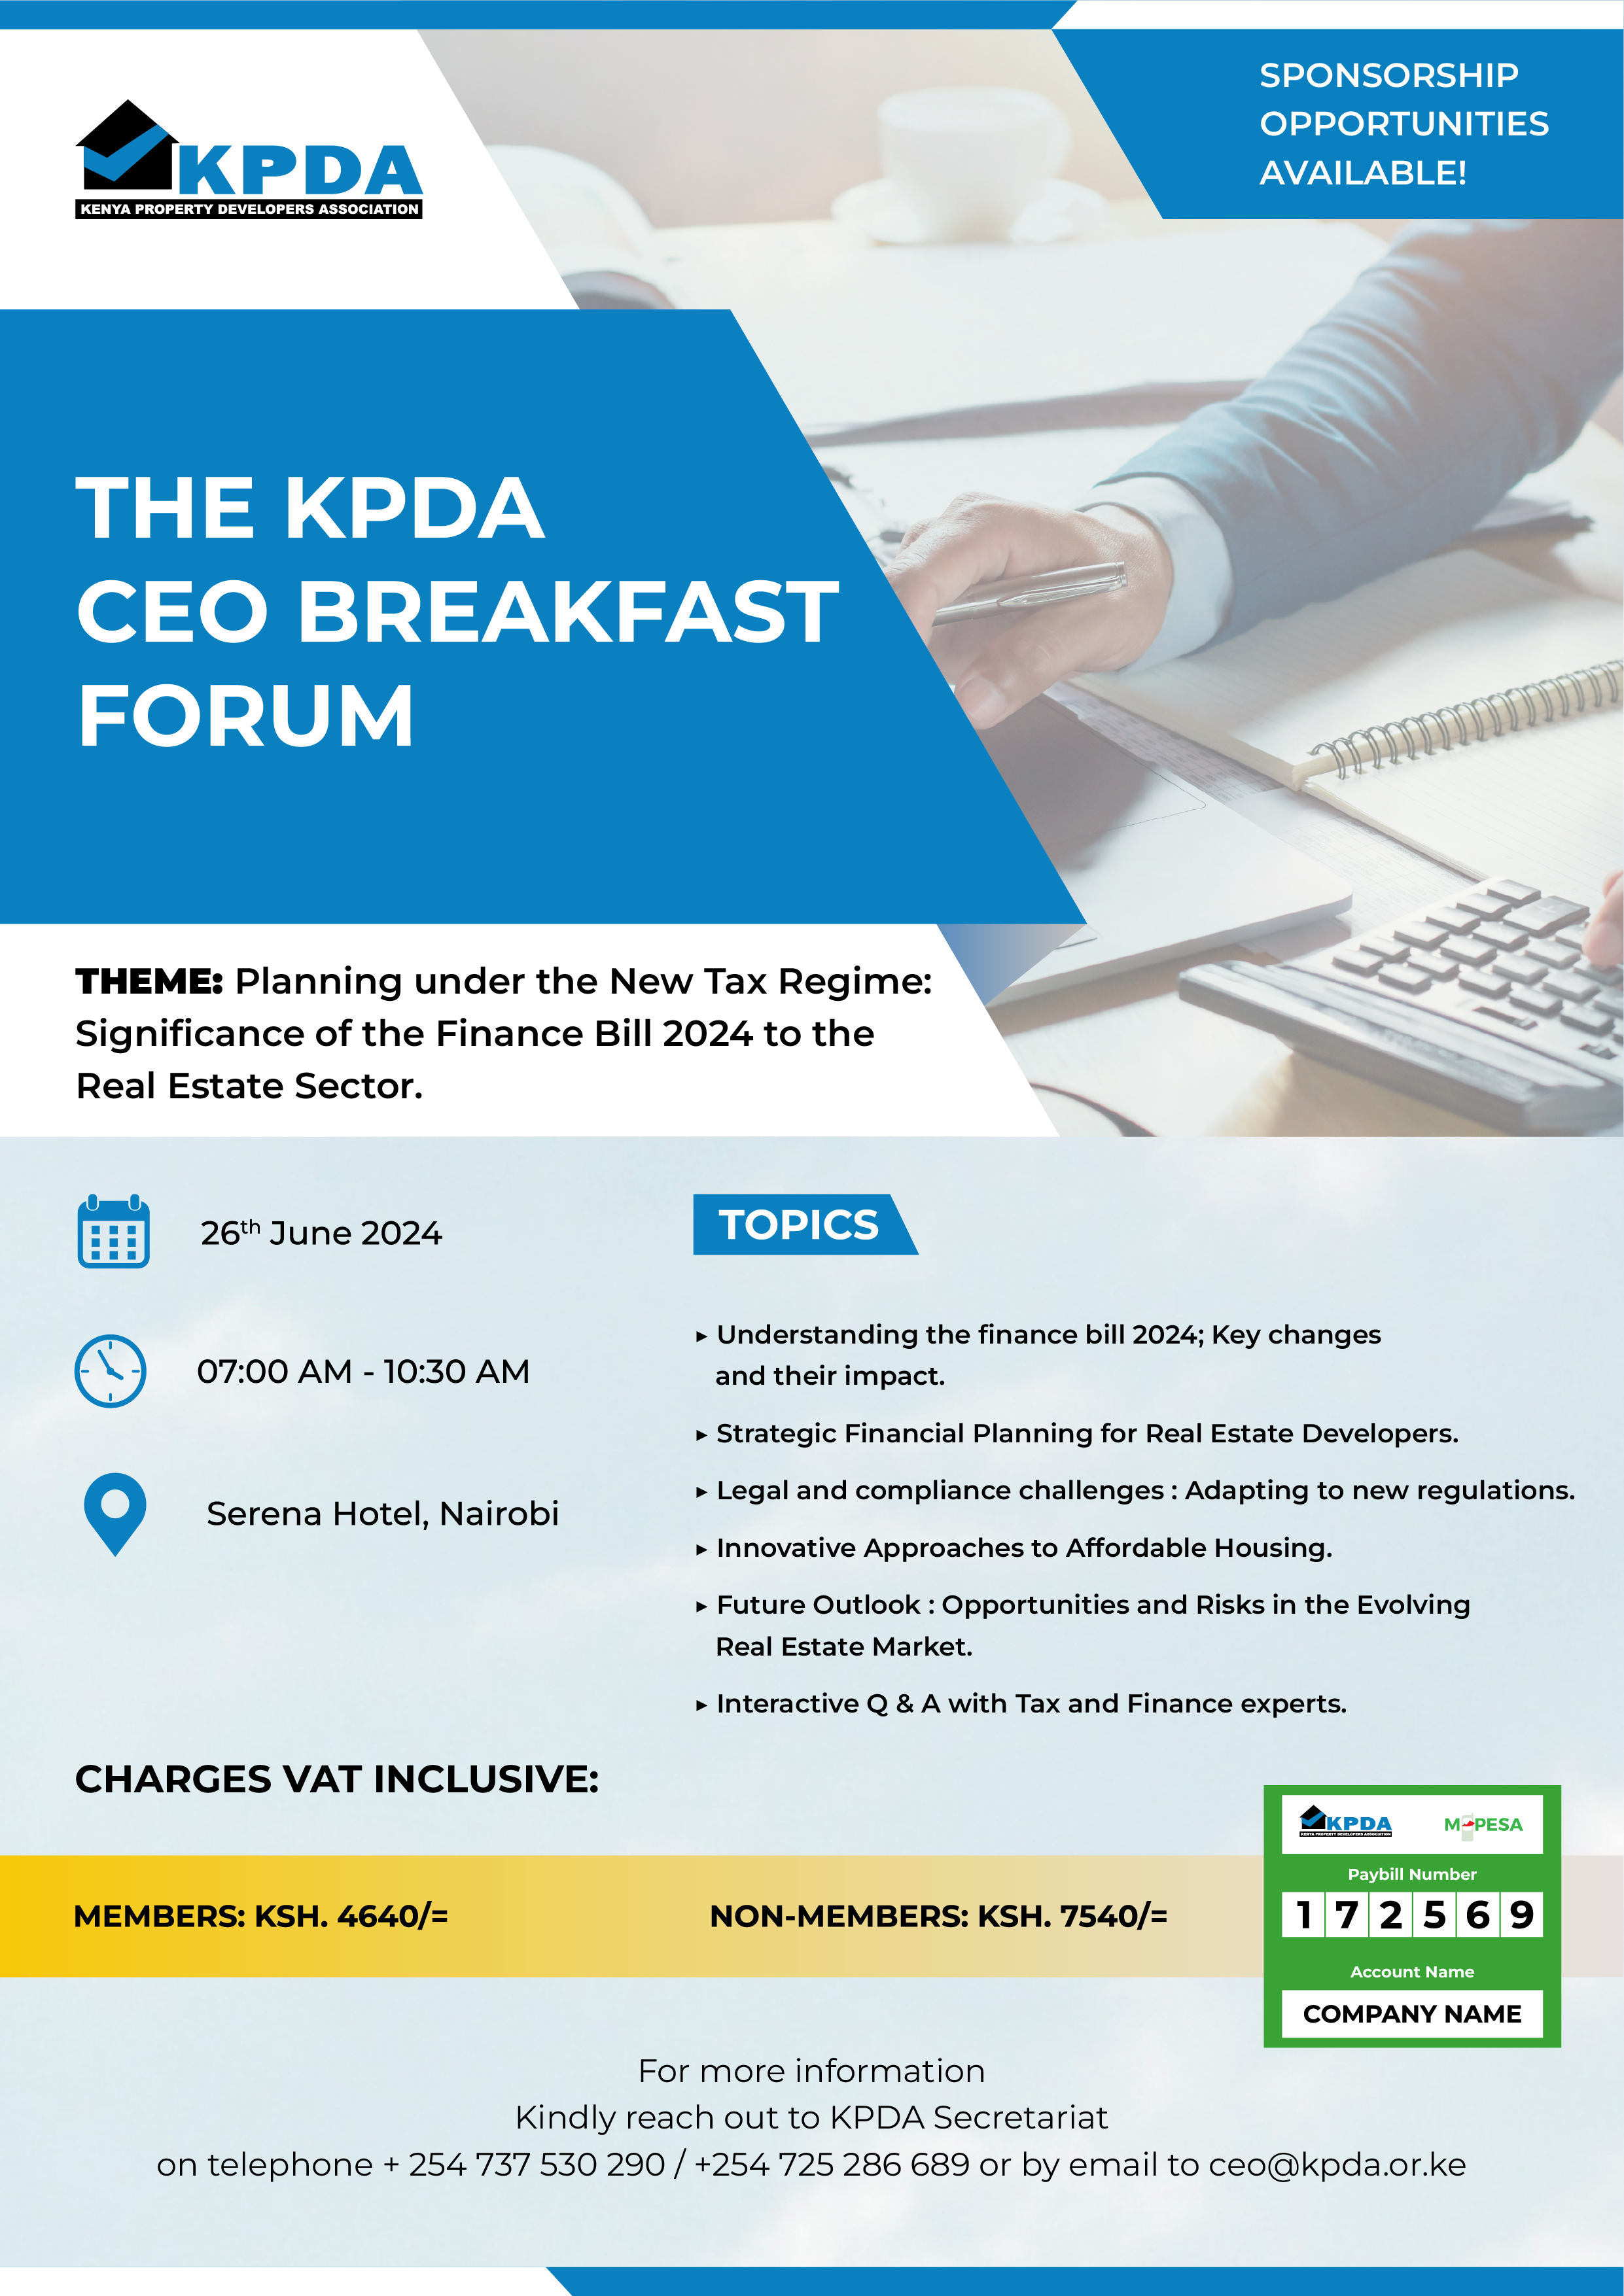 KPDA CEO Breakfast Forum